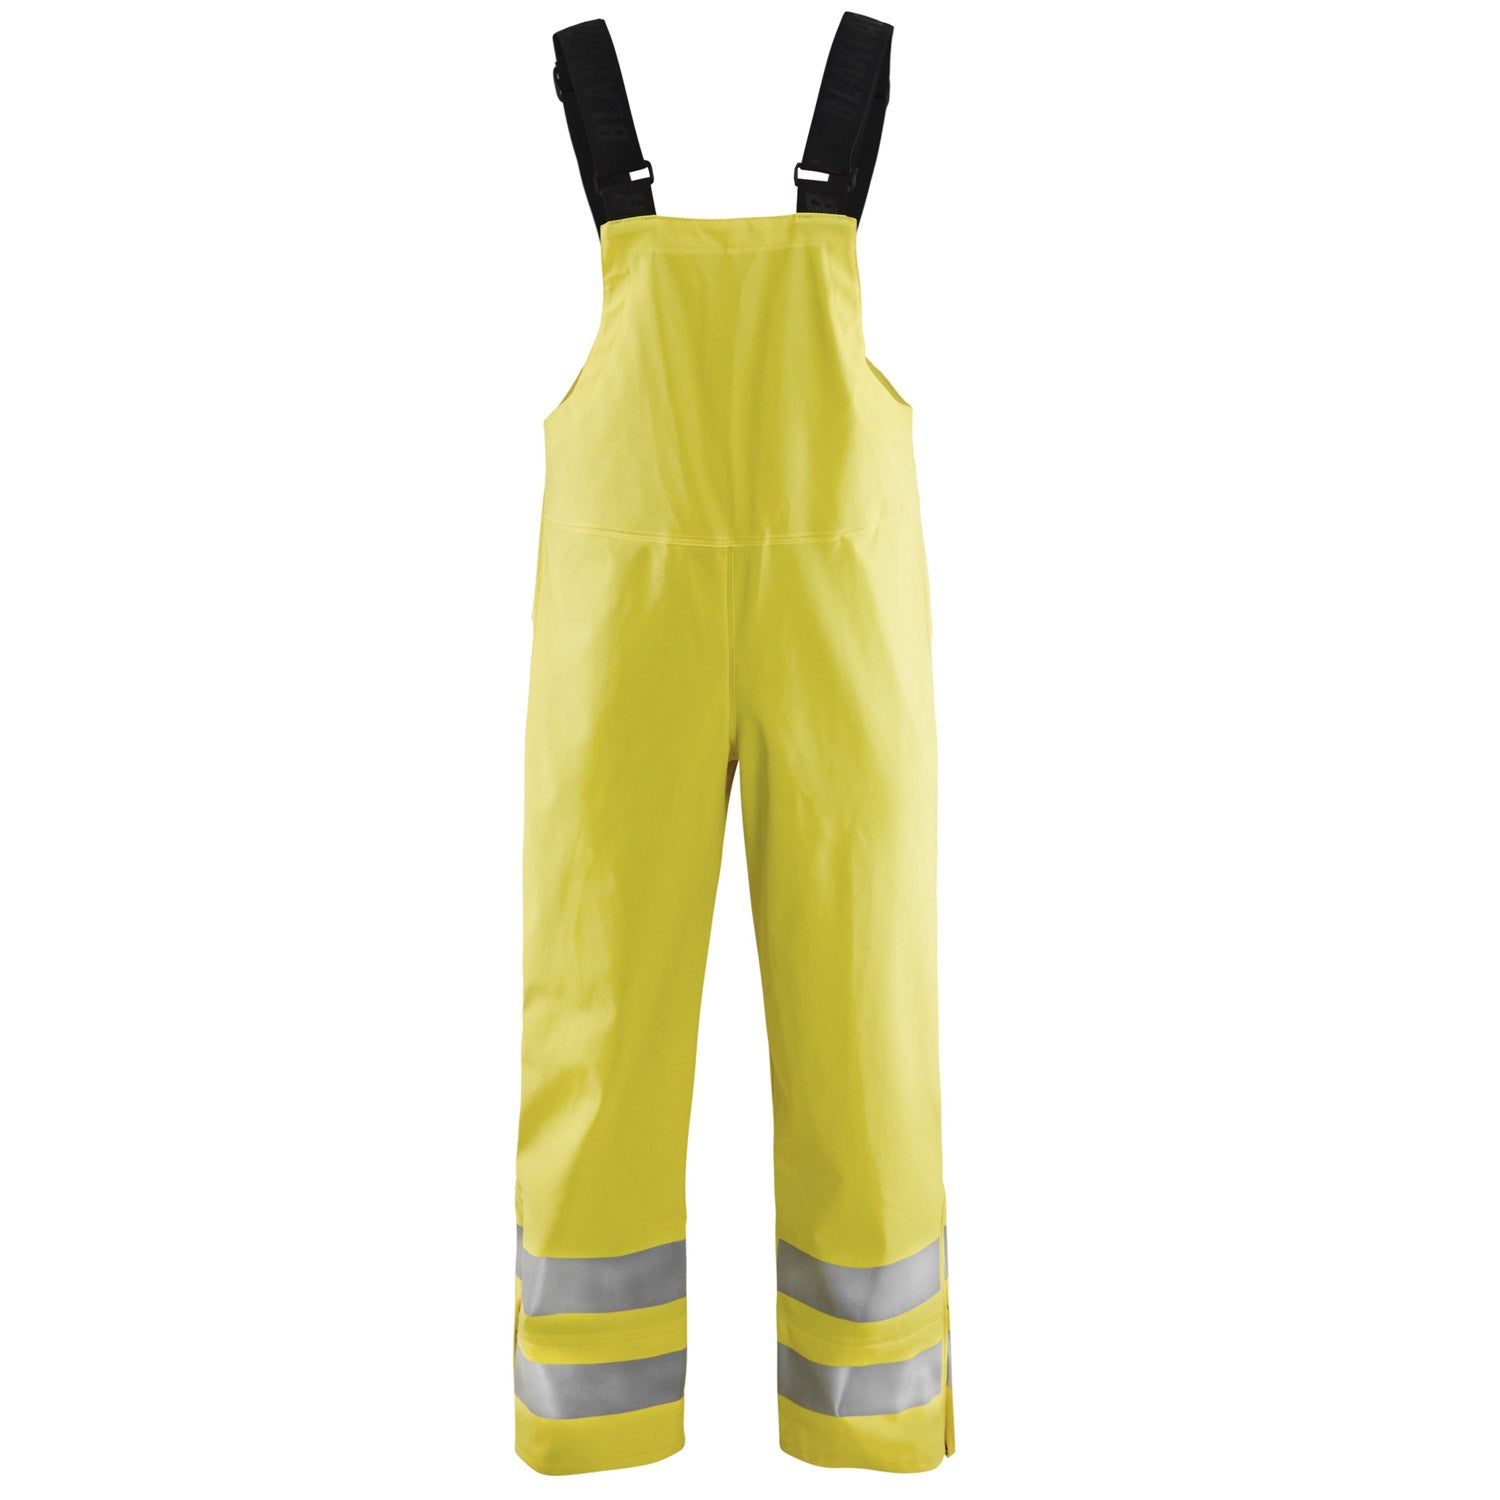 Blaklader Men's Hi-Vis Rain Bib Overalls - Work World - Workwear, Work Boots, Safety Gear